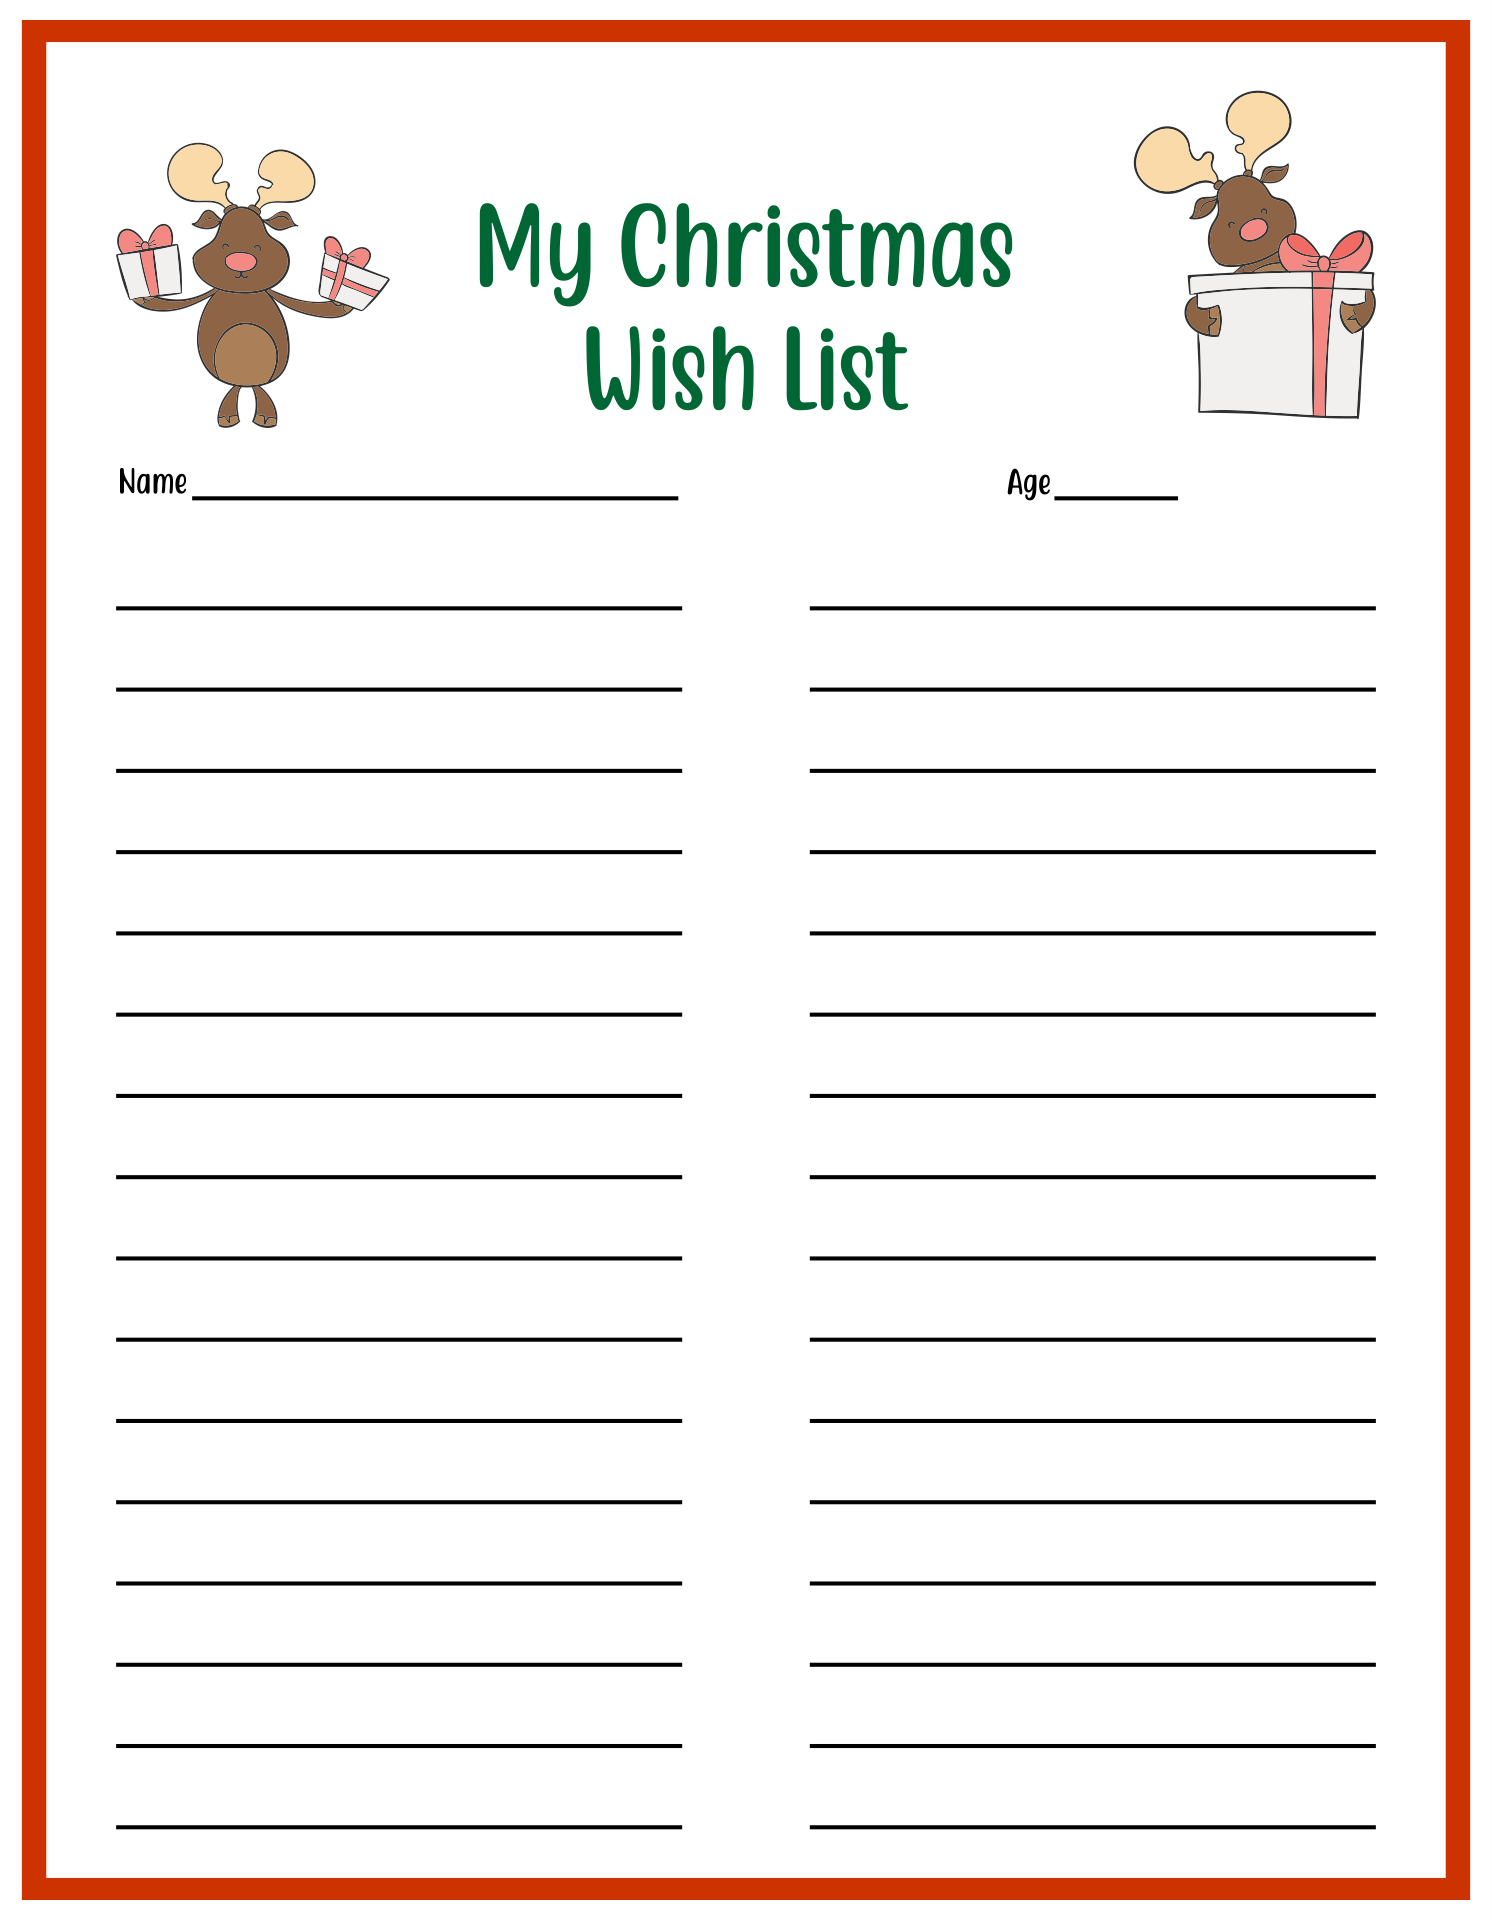 Christmas Wish List Template Free Printable